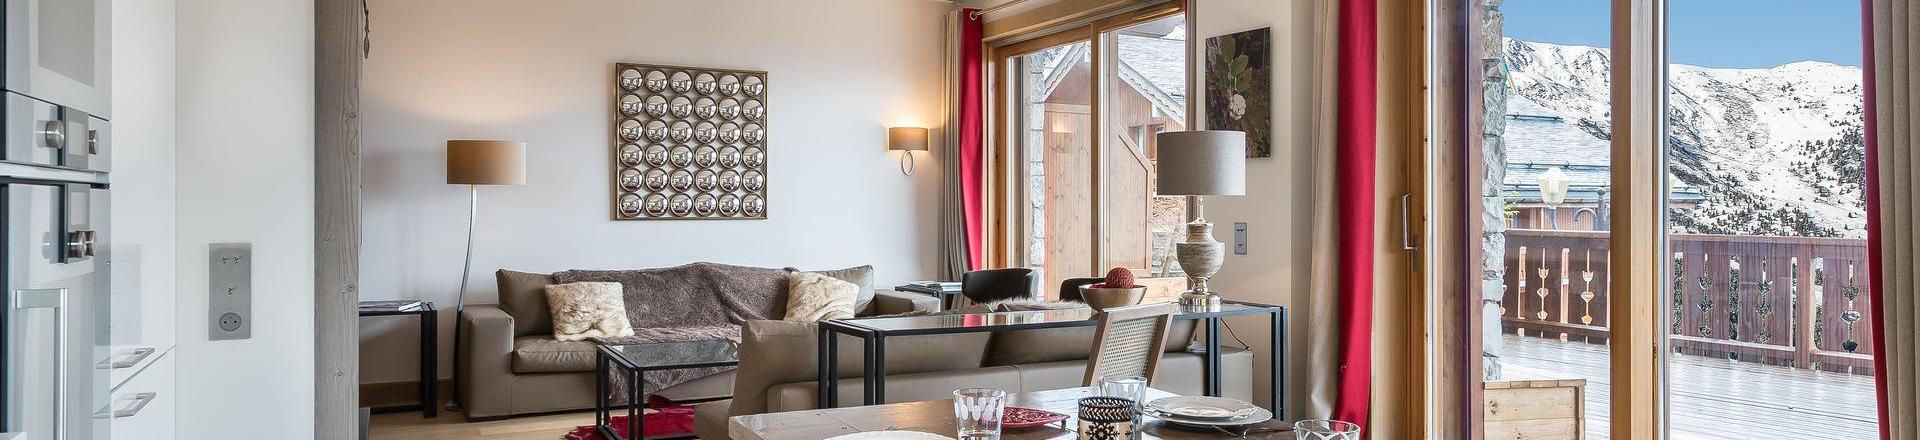 Location au ski Appartement 4 pièces 8 personnes (11) - Résidence Aspen Lodge & Park - Méribel - Séjour